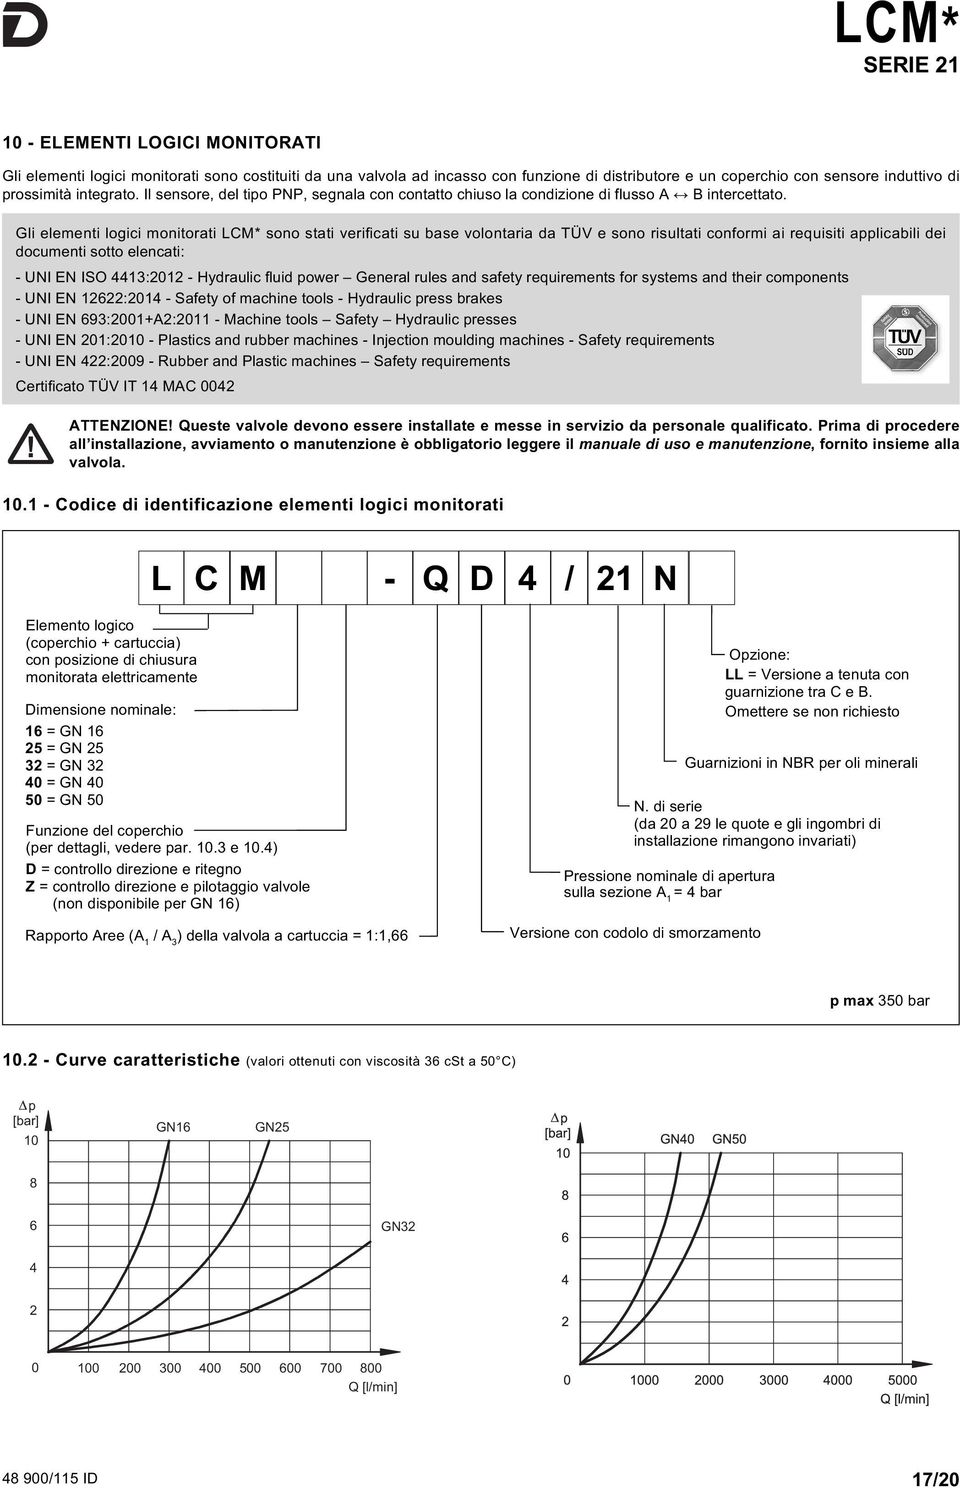 Gli elementi logici monitorati LM* sono stati verificati su base volontaria da TÜV e sono risultati conformi ai requisiti applicabili dei documenti sotto elencati: - UNI EN ISO 4413:2012 - Hydraulic